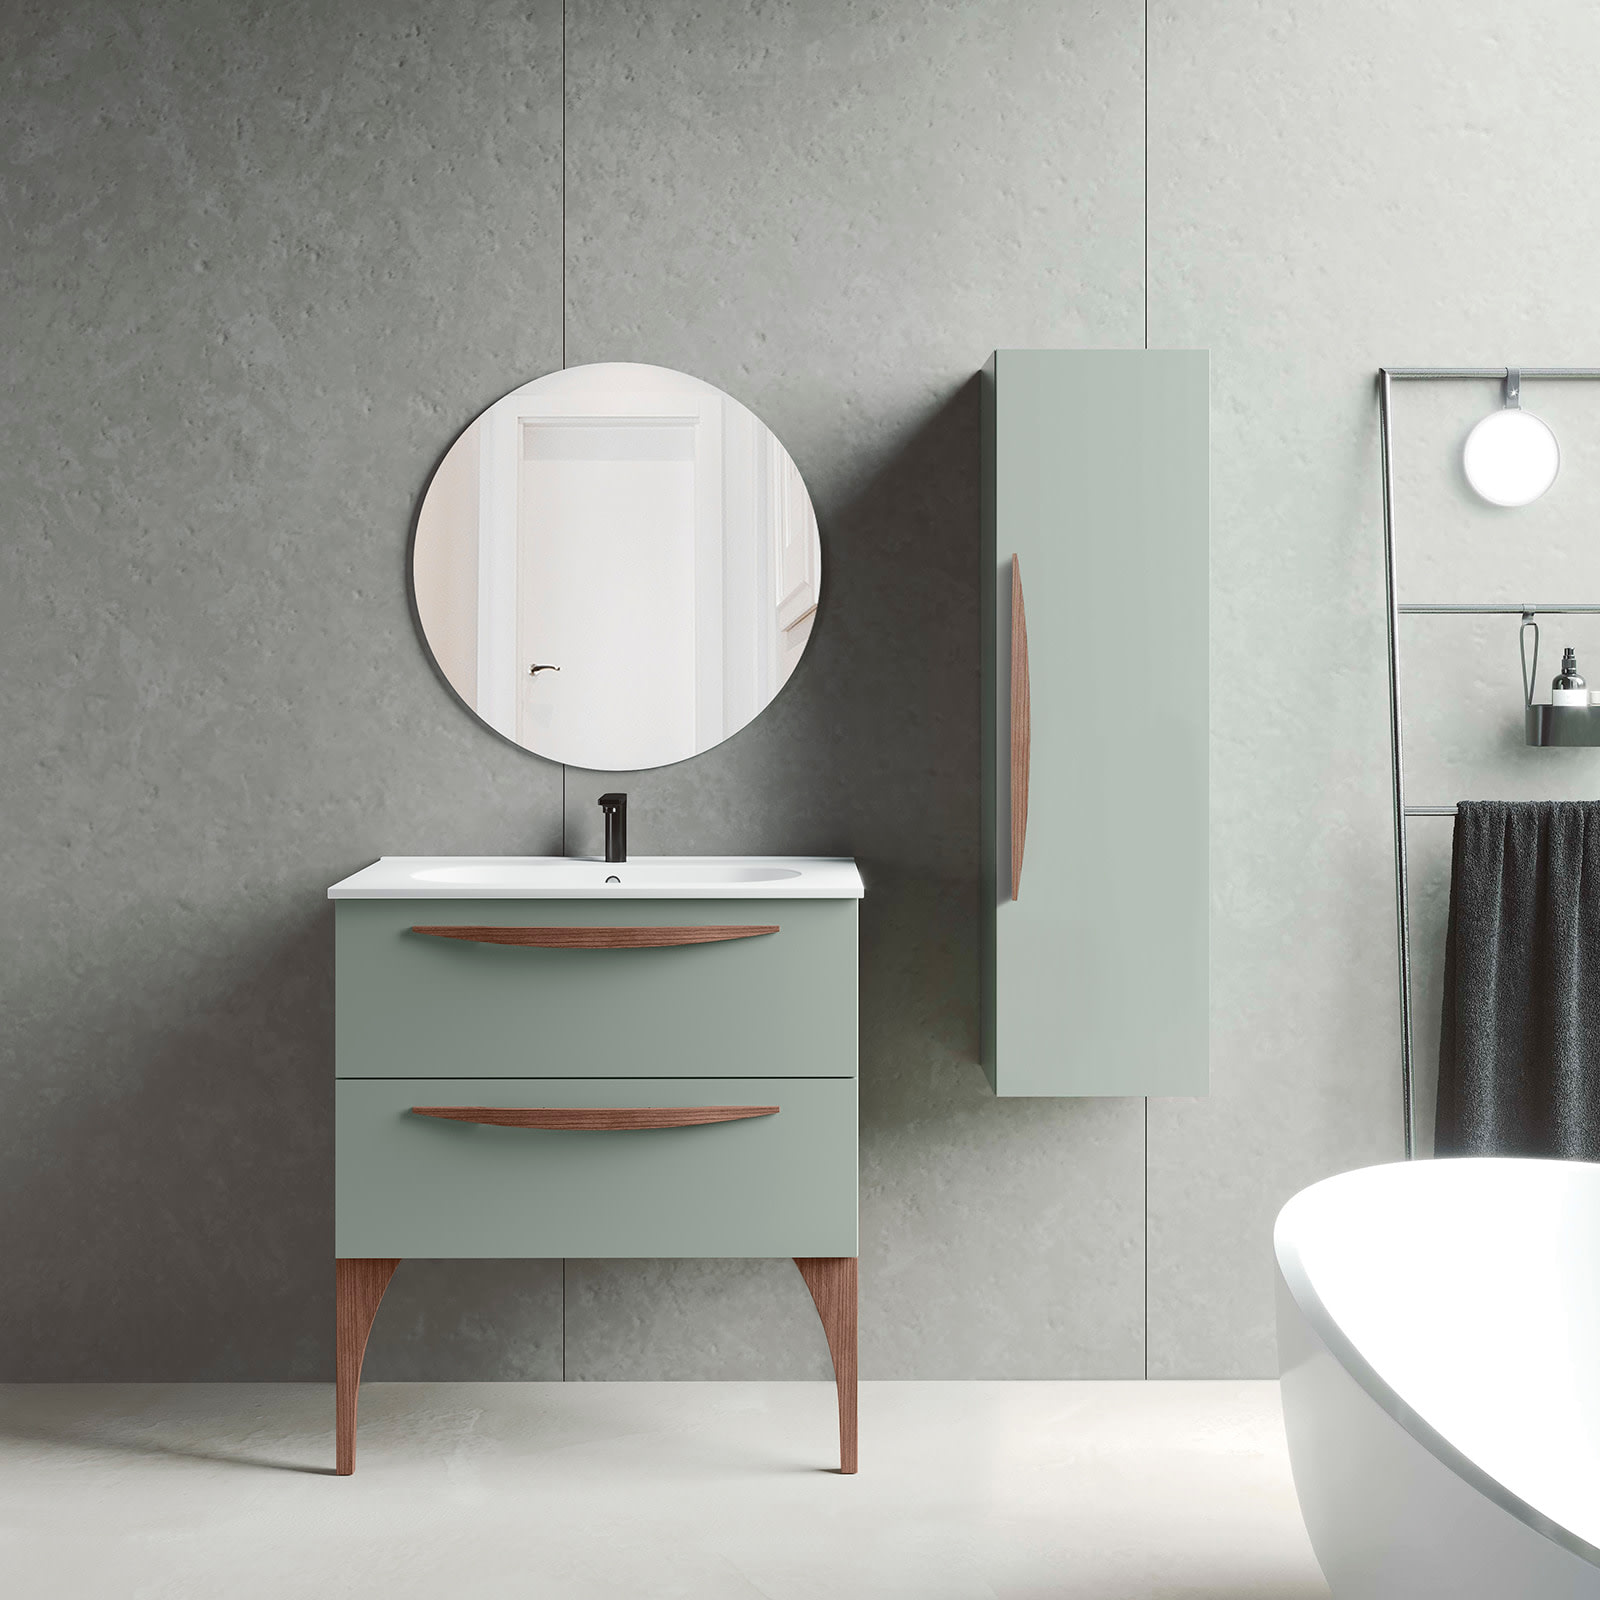 Mueble de baño con patas 3 cajones con lavabo color Ceniza Modelo Arco